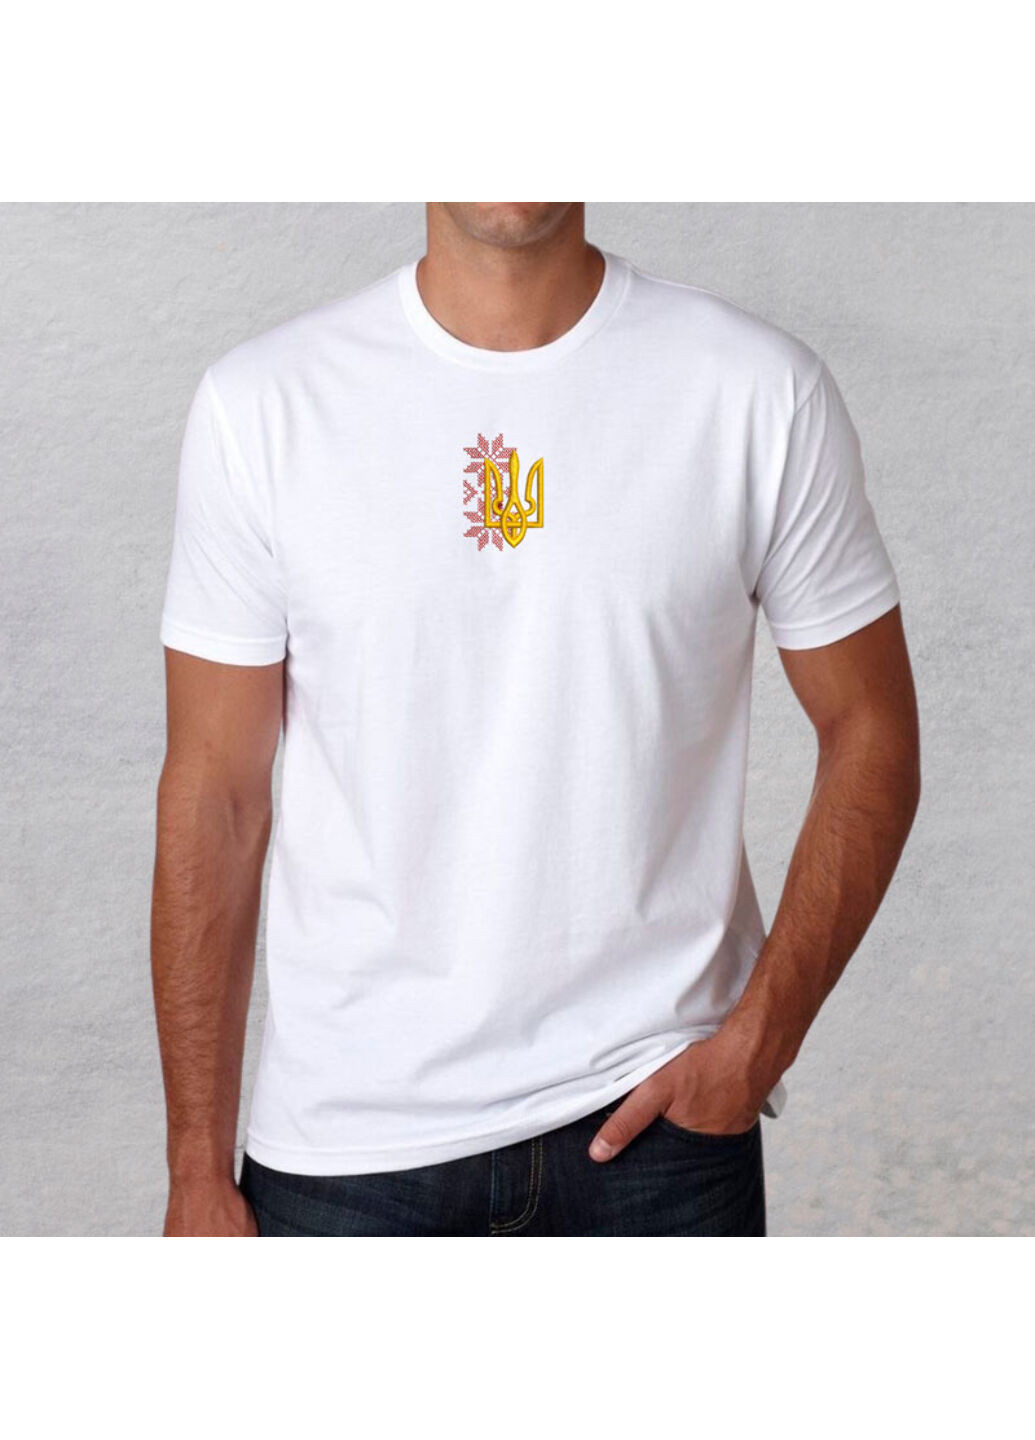 Біла футболка з вишивкою тризуба 01-7 чоловіча білий s No Brand